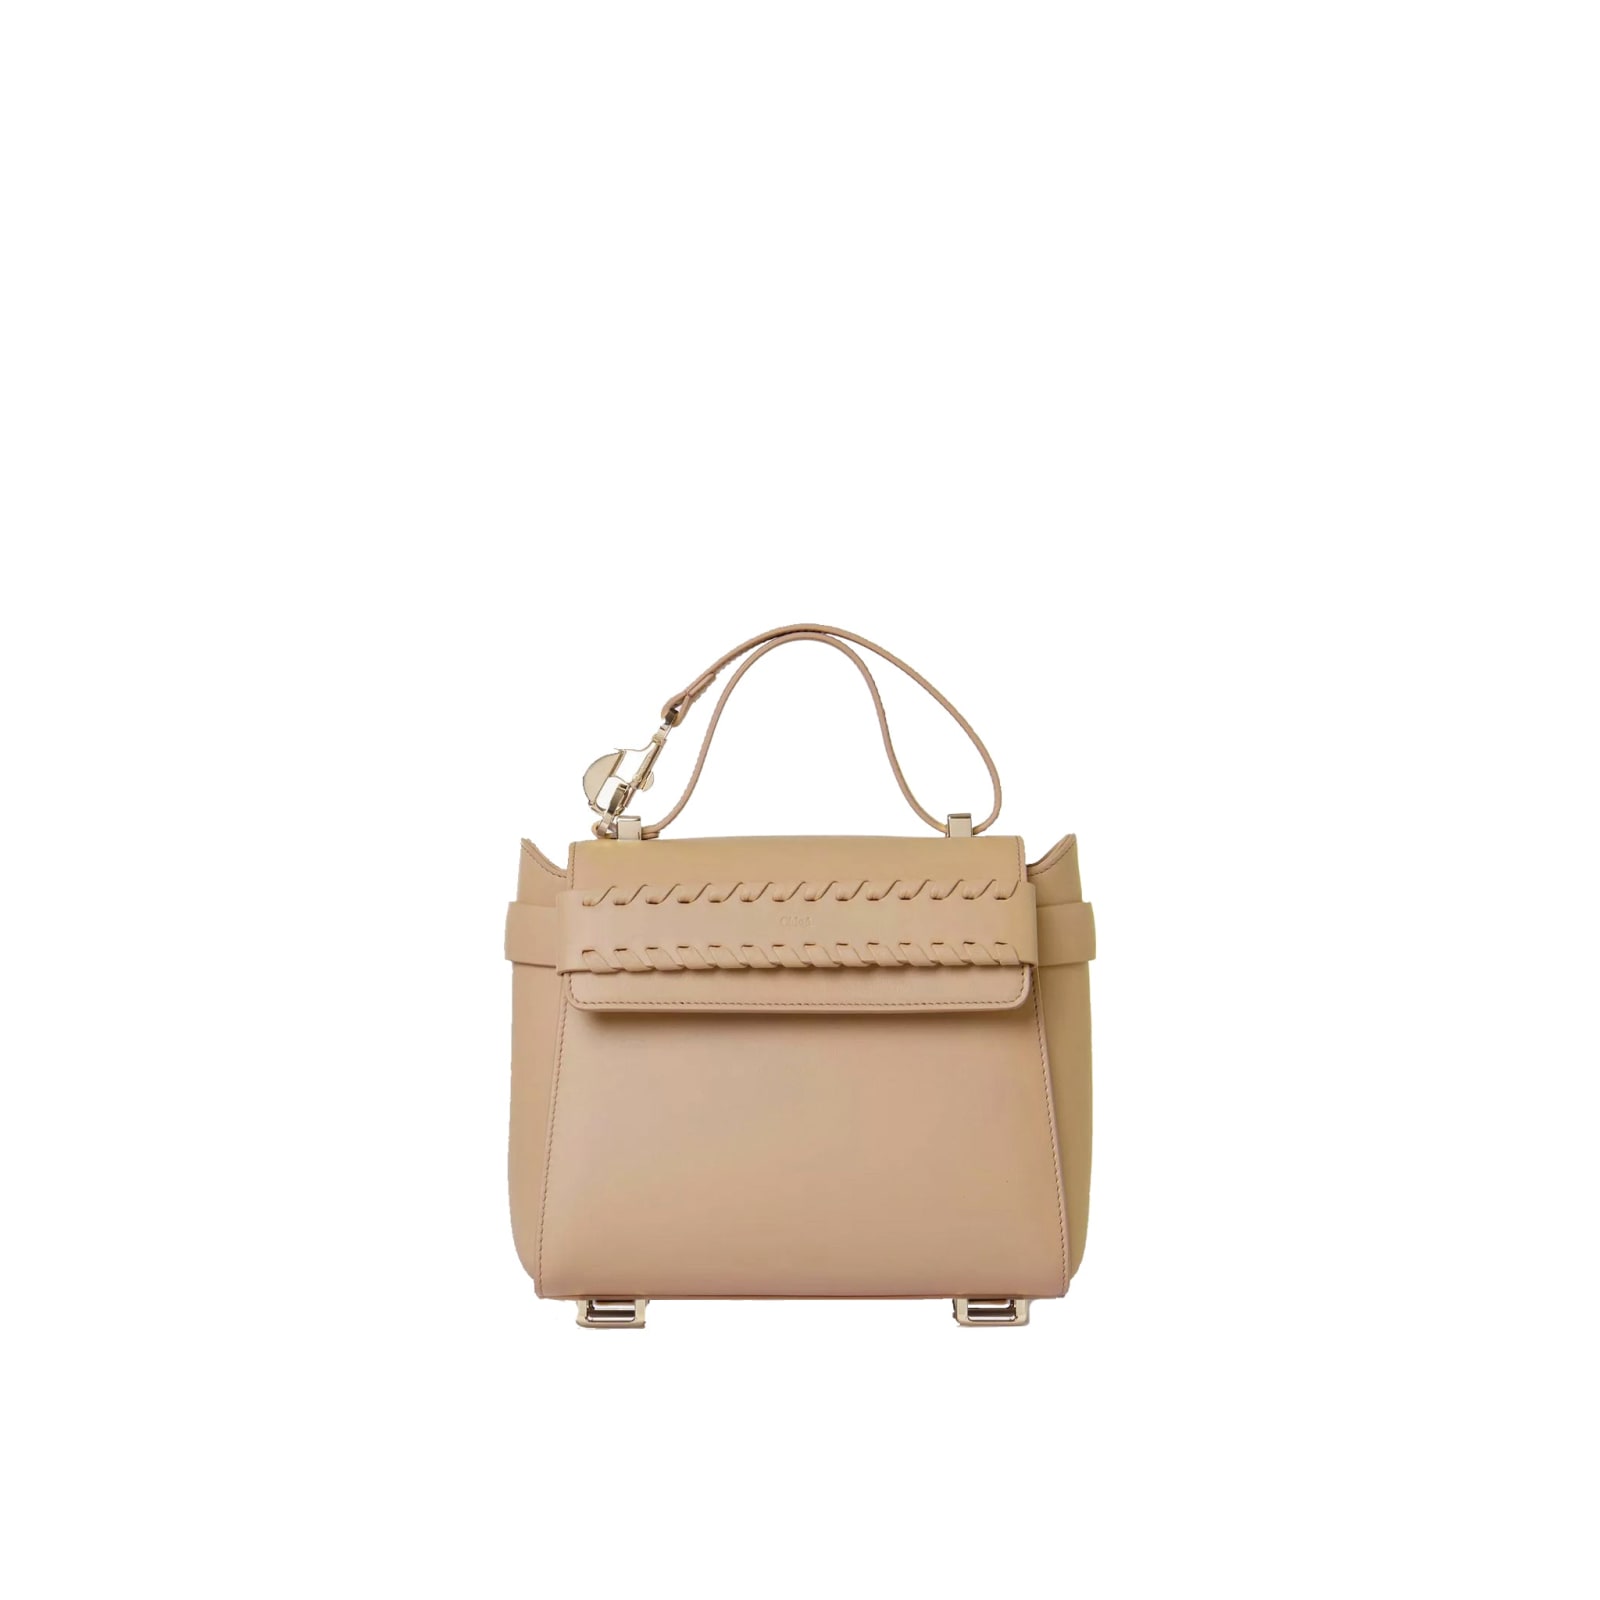 Chloé Nacha Small Leather Bag